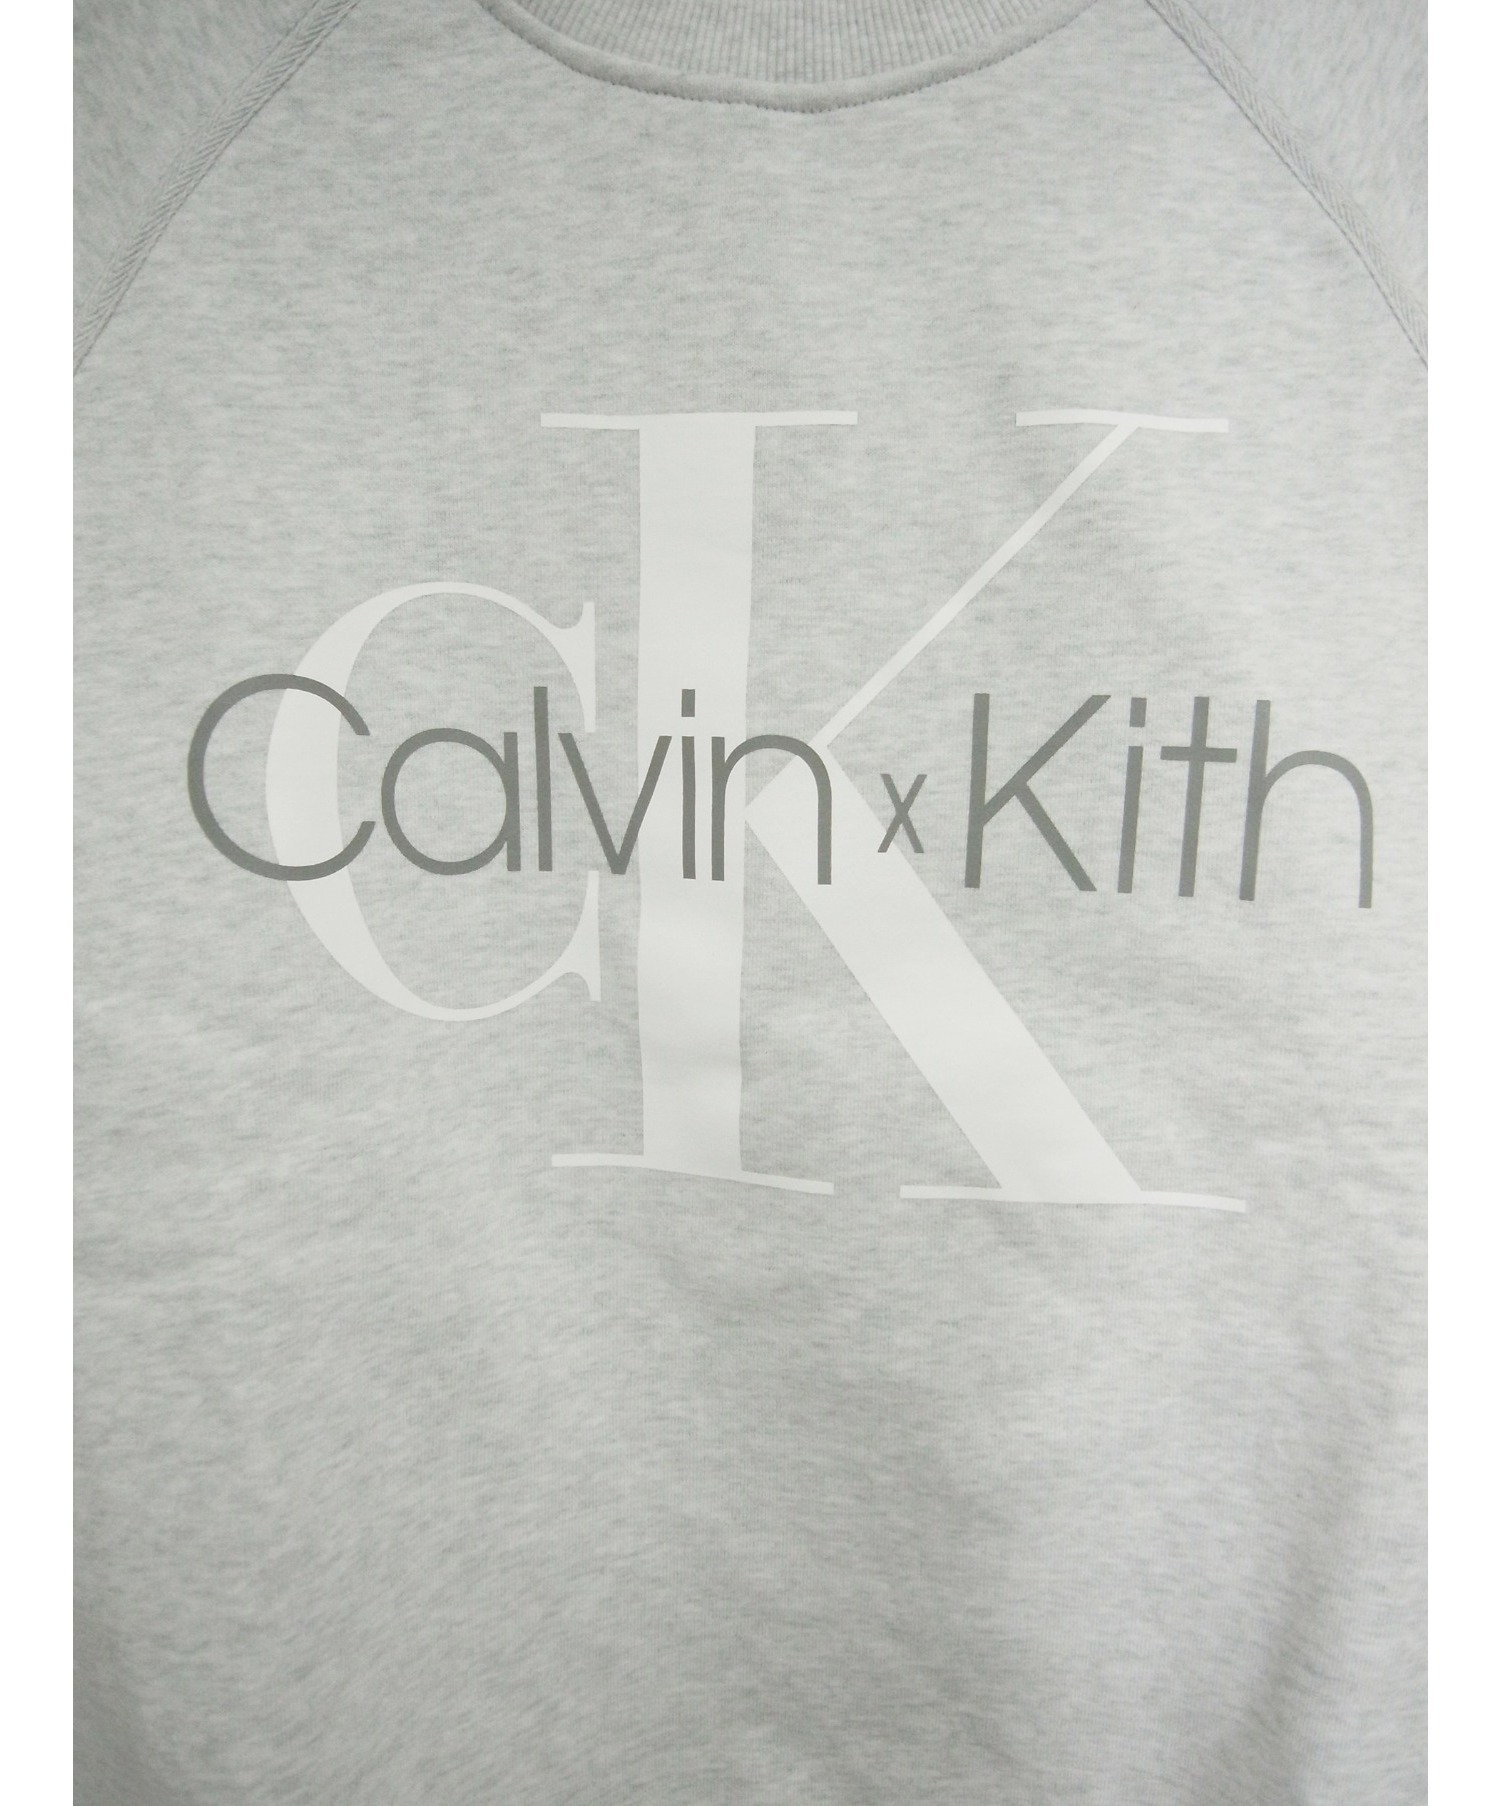 Kith & Kith Women for Calvin Klein Season 1 & 2